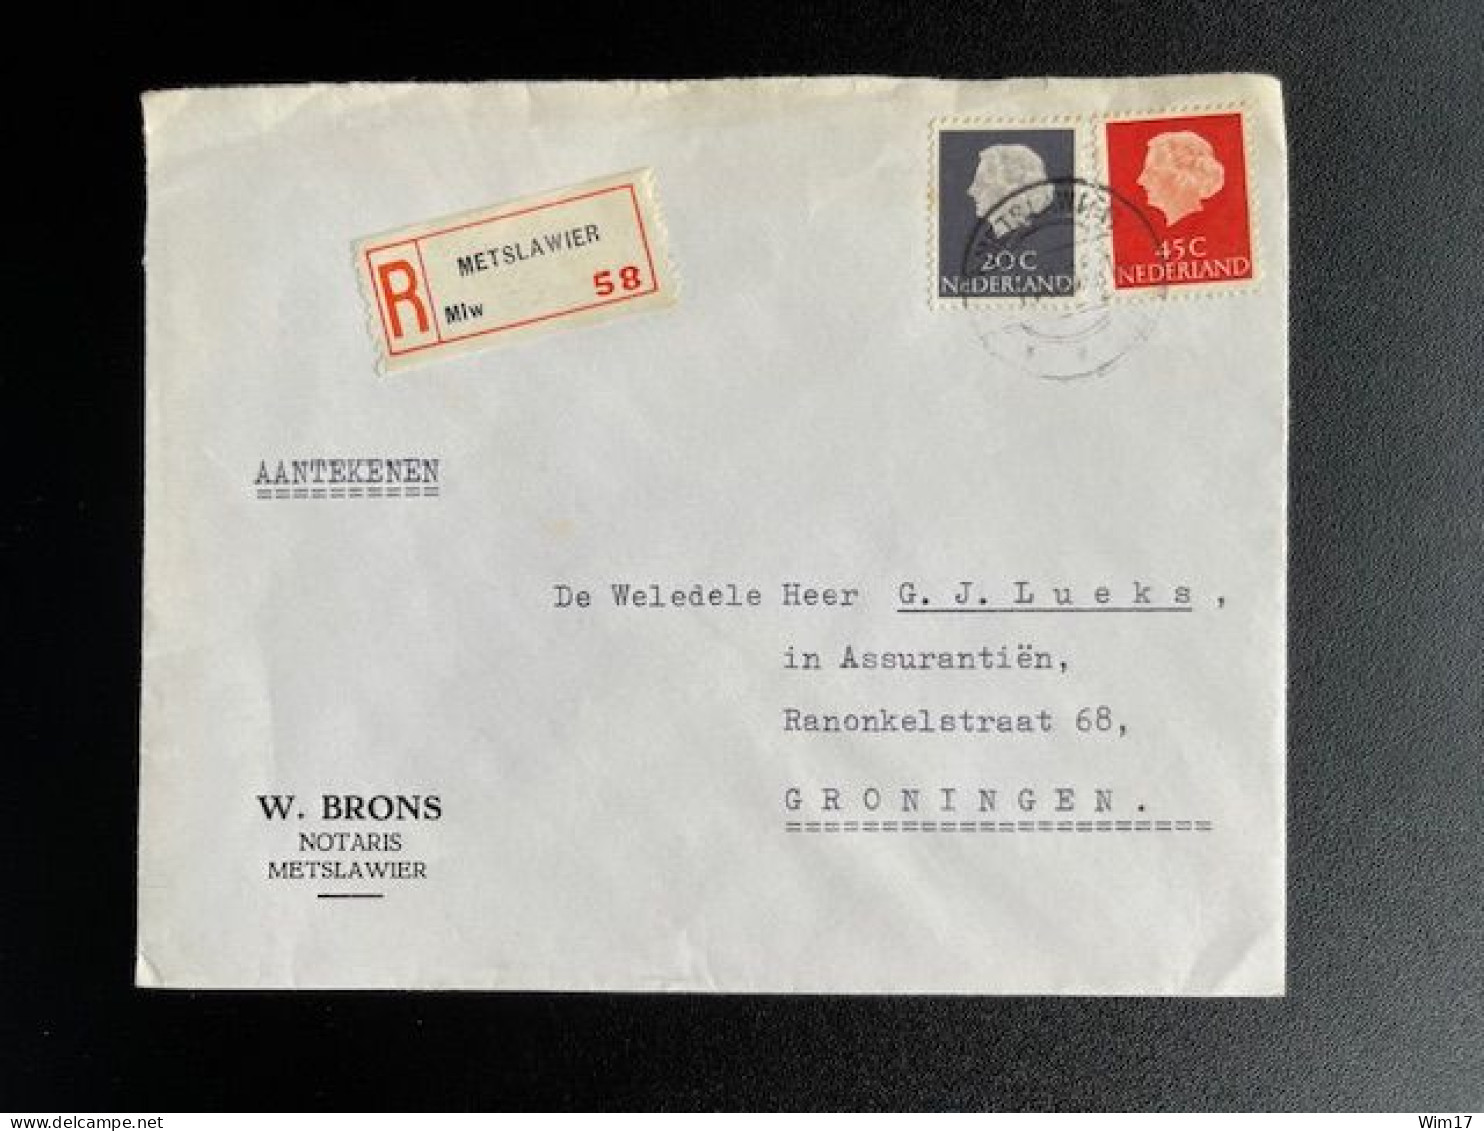 NETHERLANDS 1966 REGISTERED LETTER METSLAWIER TO GRONINGEN 01-11-1966 NEDERLAND AANGETEKEND - Cartas & Documentos